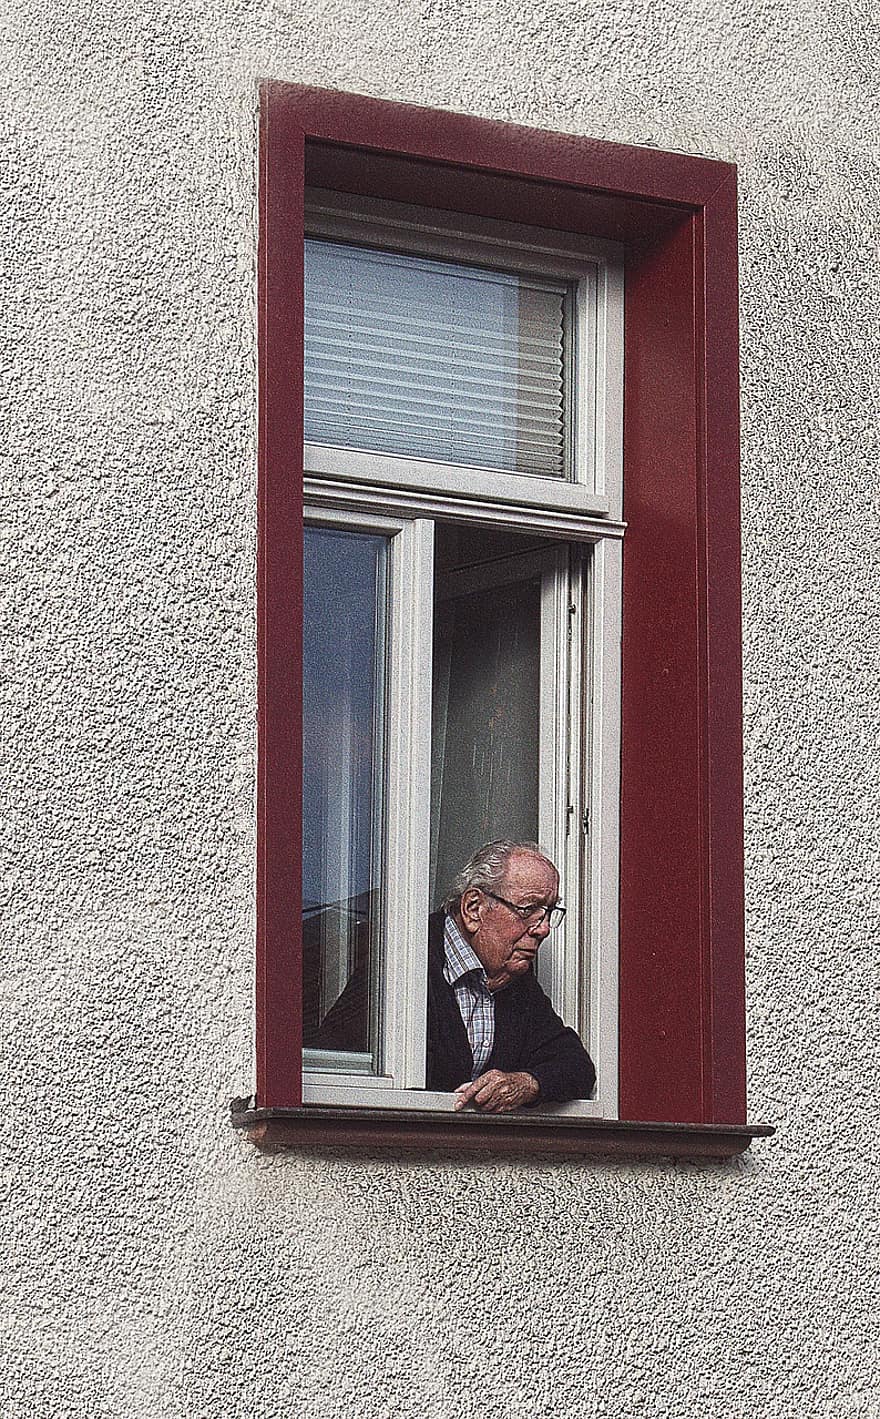 vieil homme, la fenêtre, bâtiment, homme, Sénior, les personnes âgées, curieuse, en train de regarder, appartement, Urbain